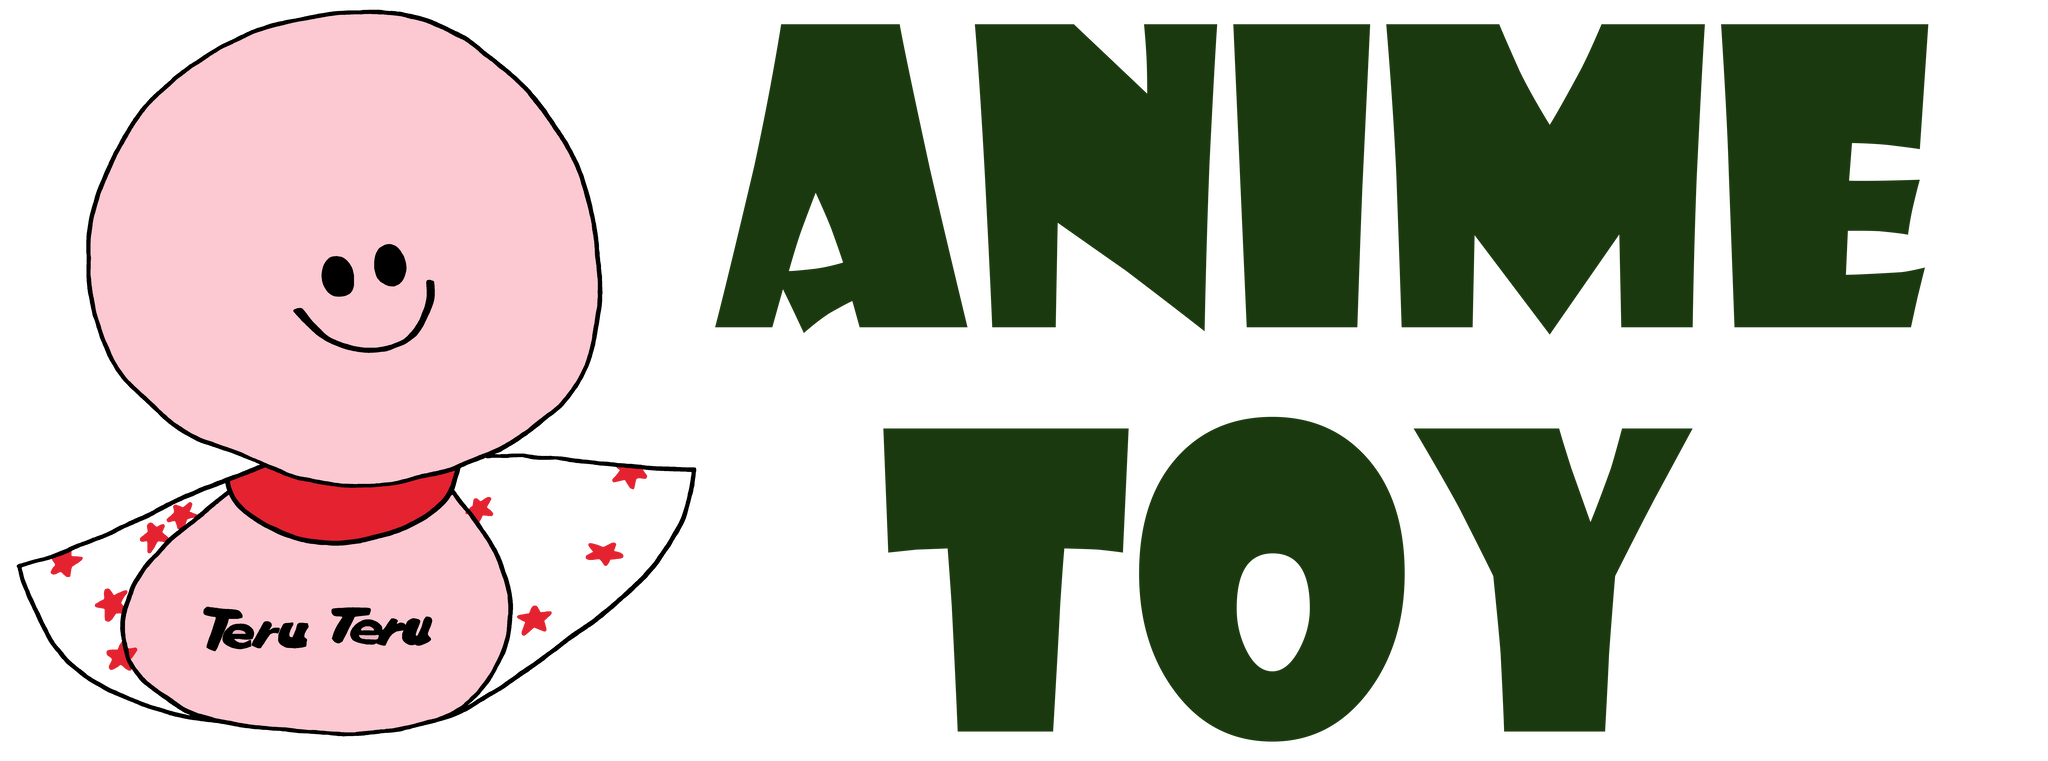 Funko Pop 僕のヒーローアカデミア ヒロアカ デク 緑谷出久 コスチューム フィギュア Anime Toy 海外 アニメ キャラクター グッズ販売